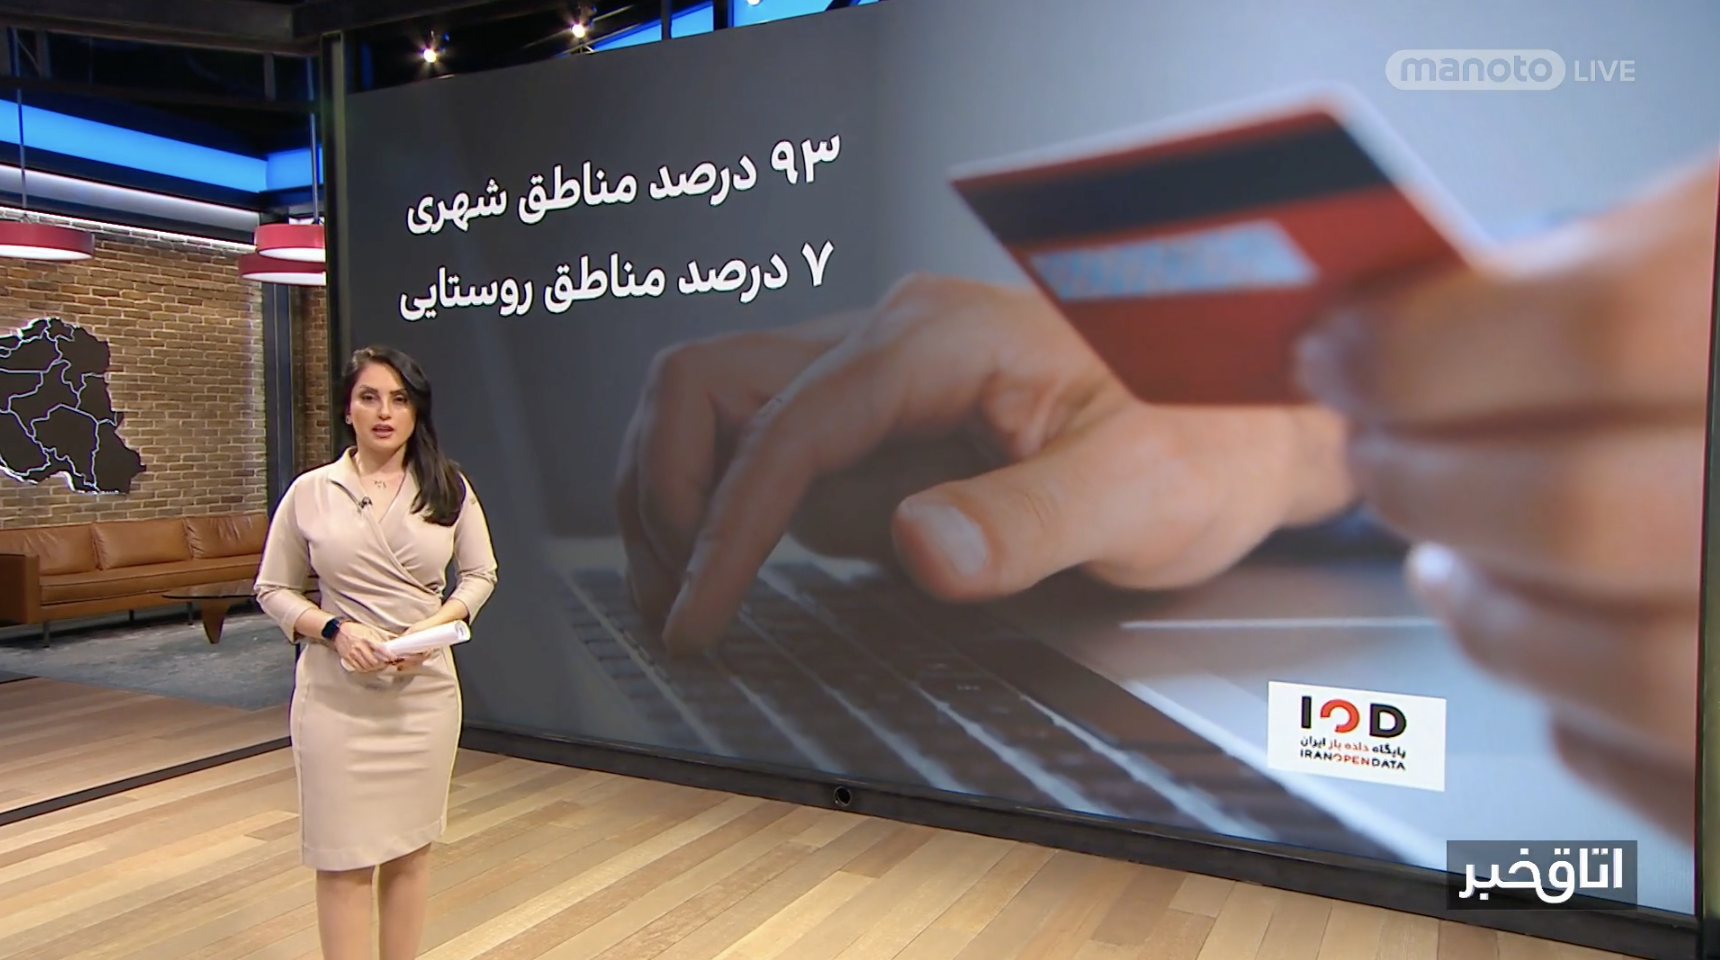 اینستاگرام درآمدزاترین پلتفرم برای ایرانیان